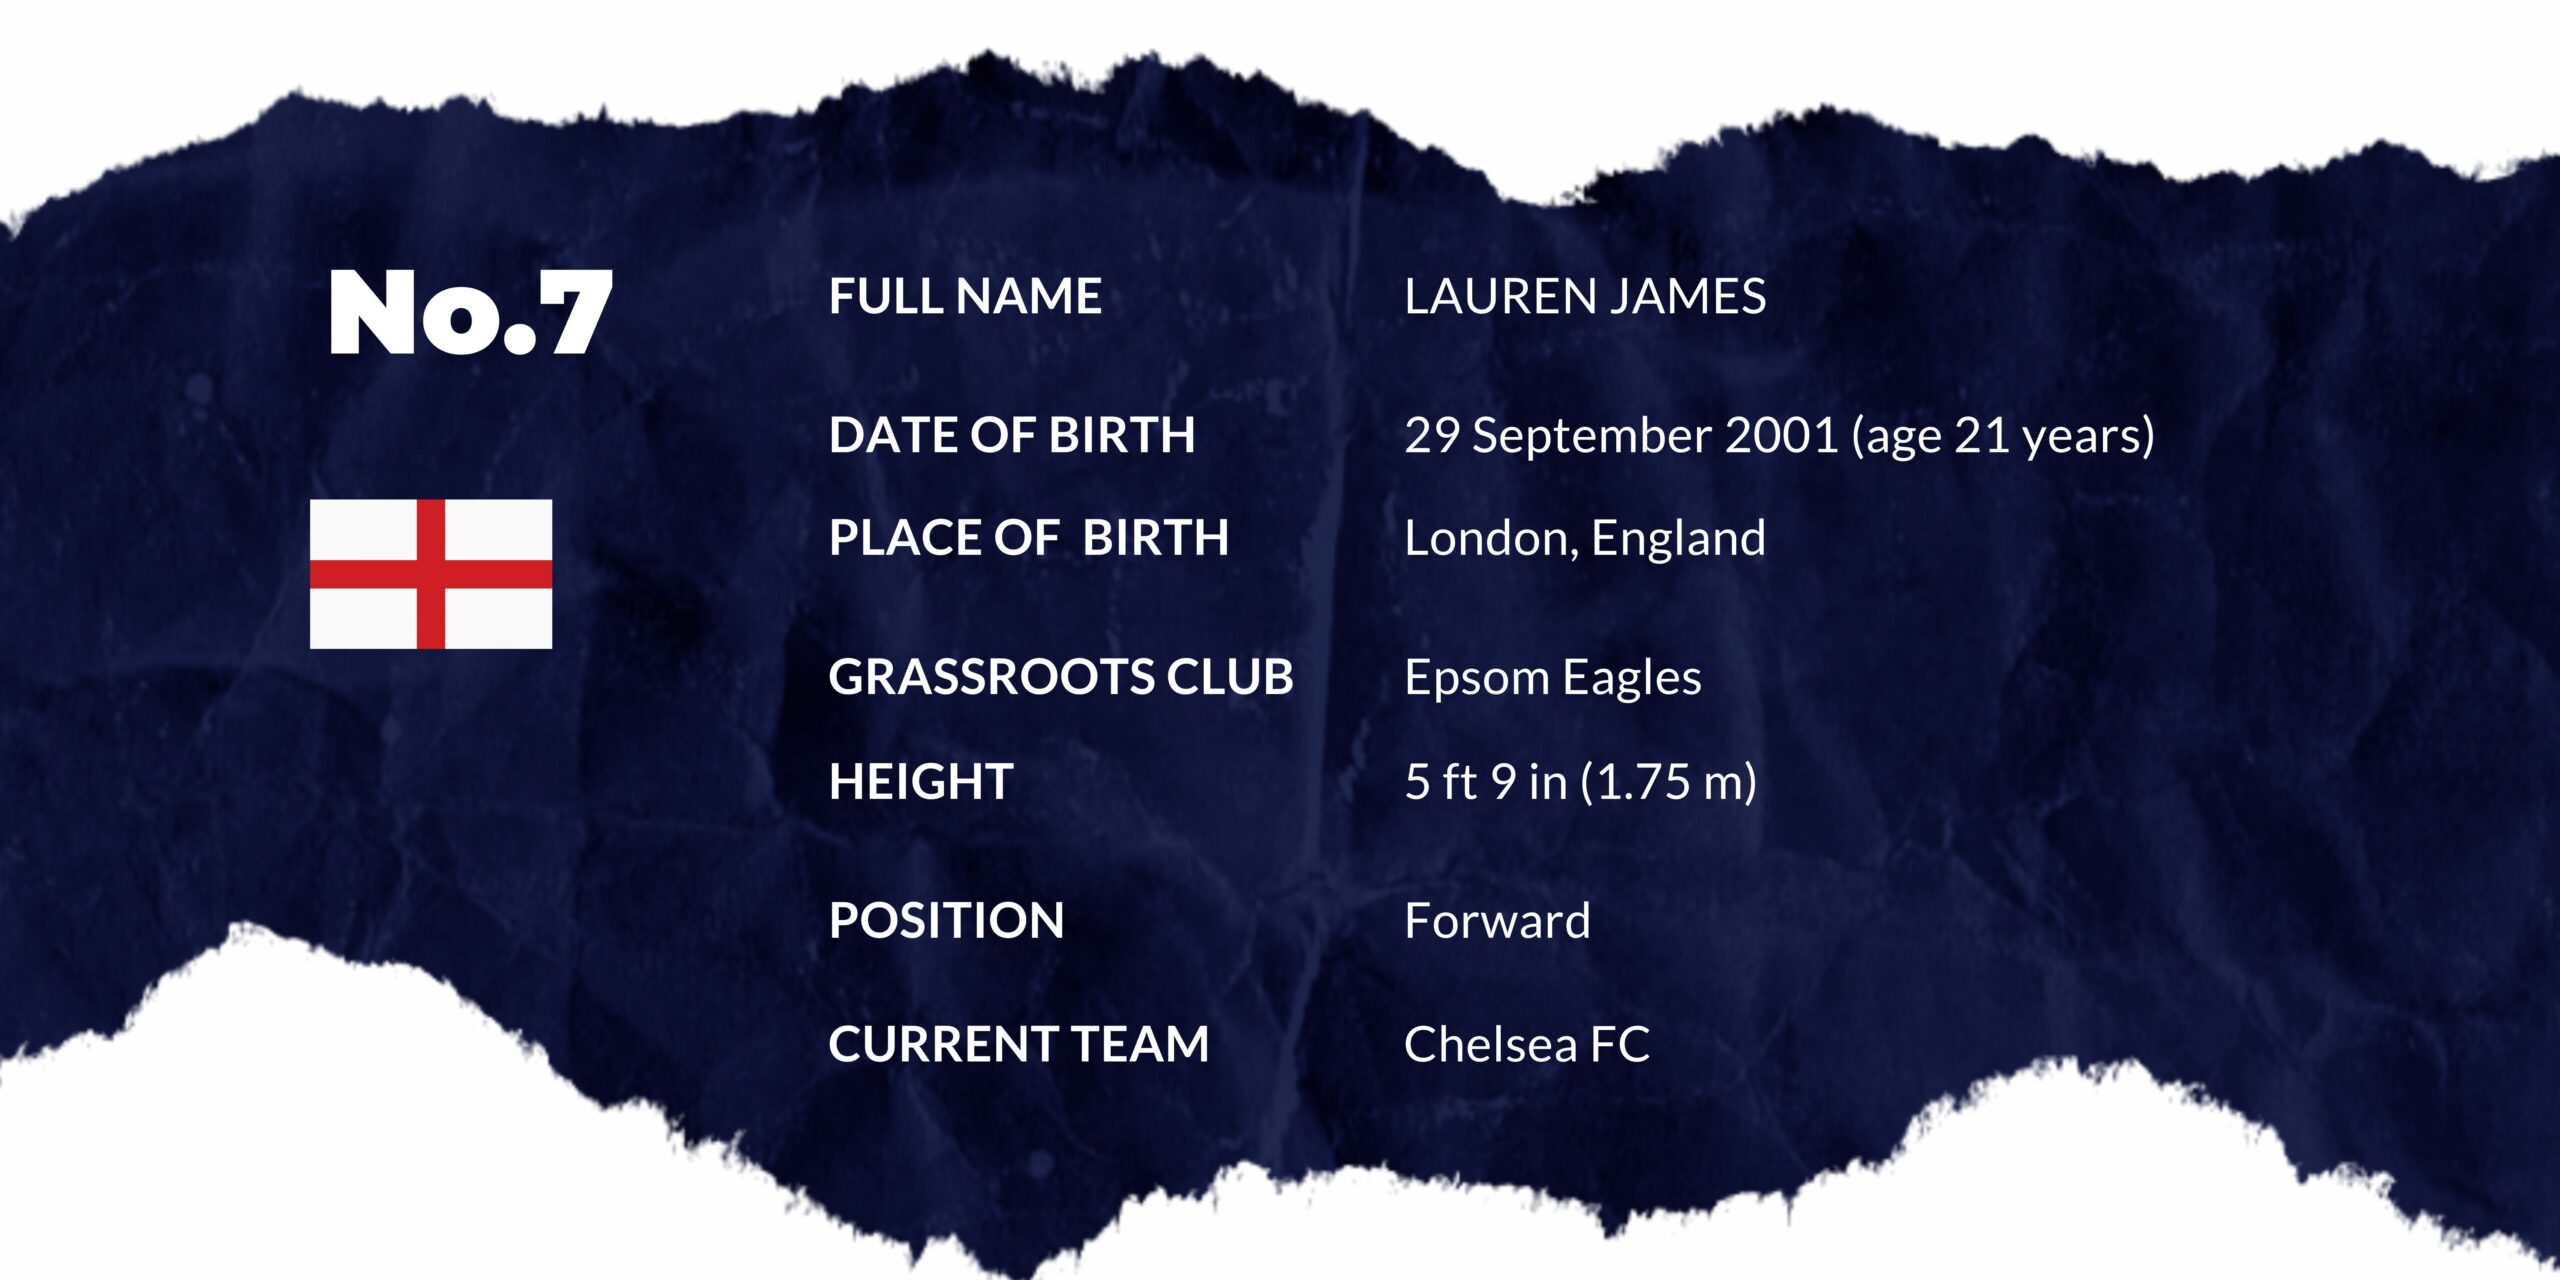 Who is Lauren James?